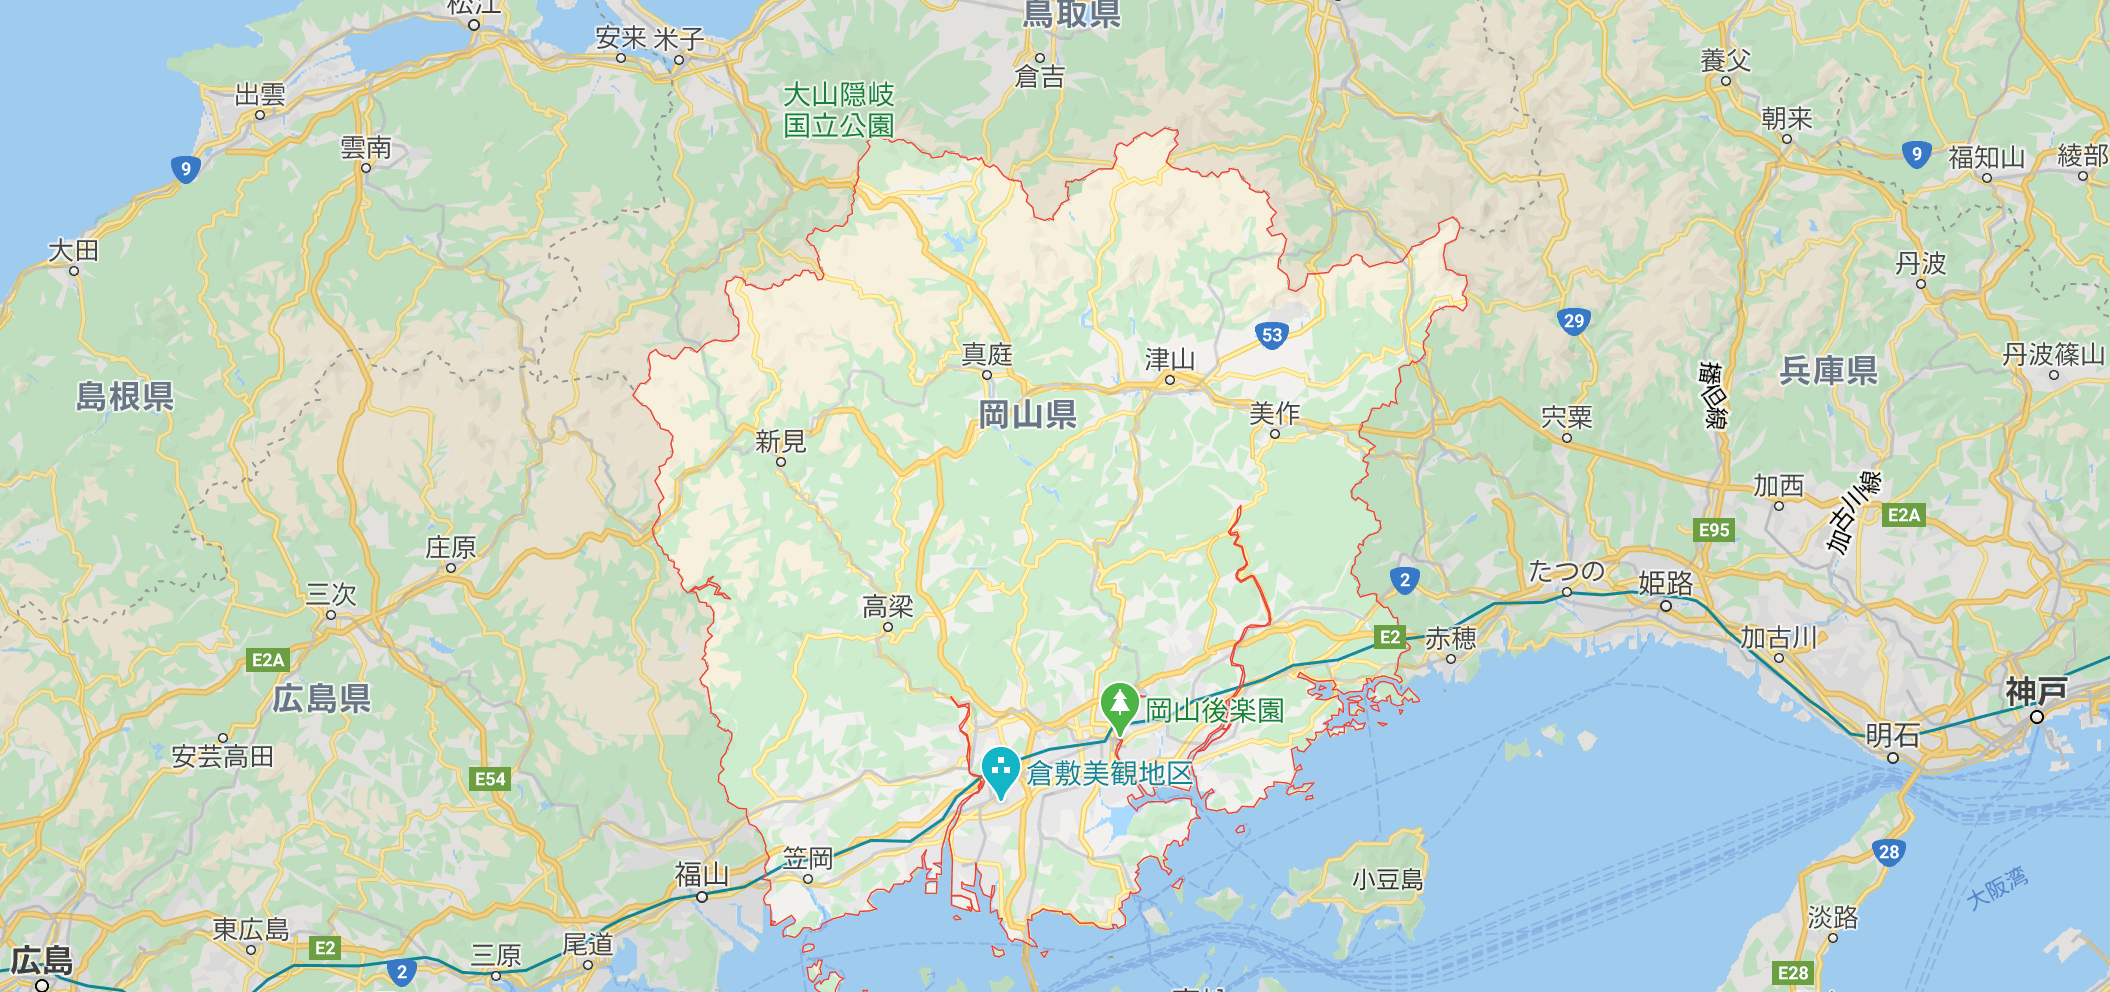 岡山を中心とした中国地方のマップ